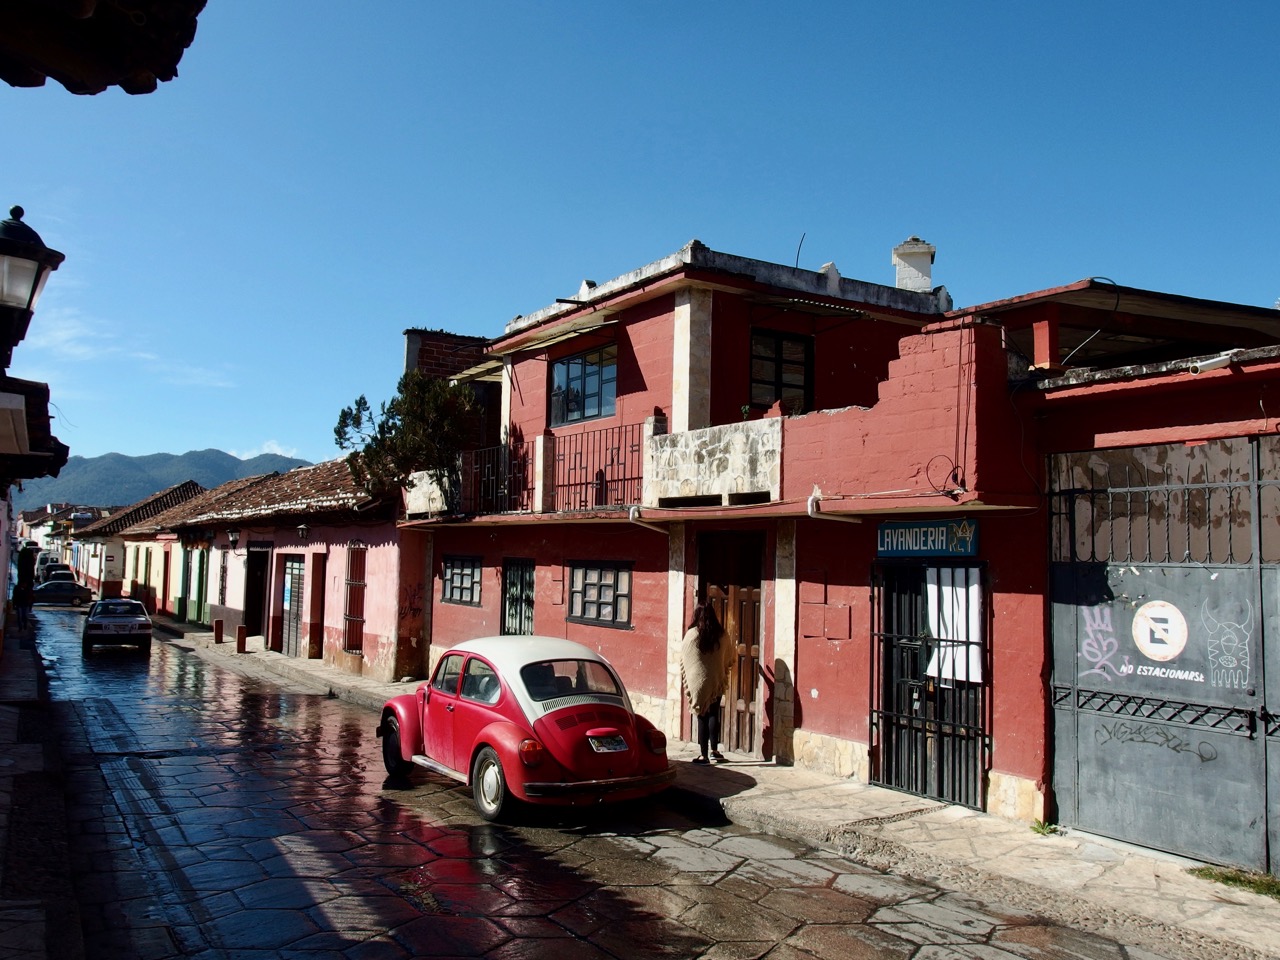 San Cristóbal, Mexico